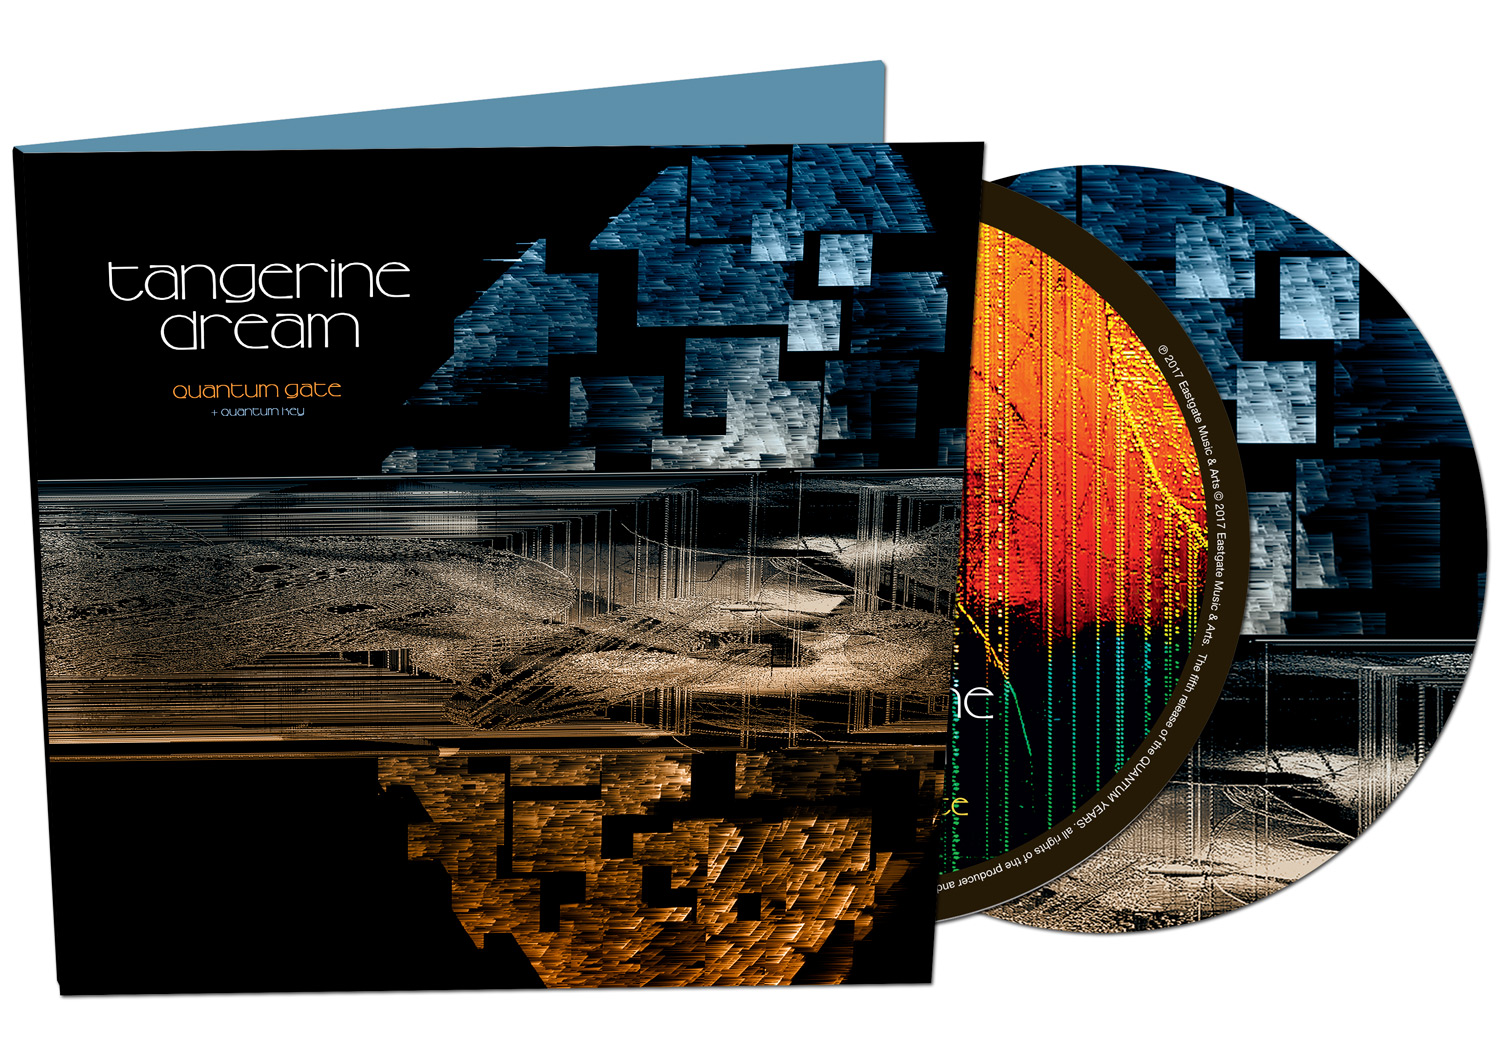 Flac 2018. Tangerine Dream - Quantum Gate CD. Tangerine Dream Quantum Gate 2017. Tangerine Dream [2017] - Quantum Gate CD. Tangerine Dream Quantum Key.